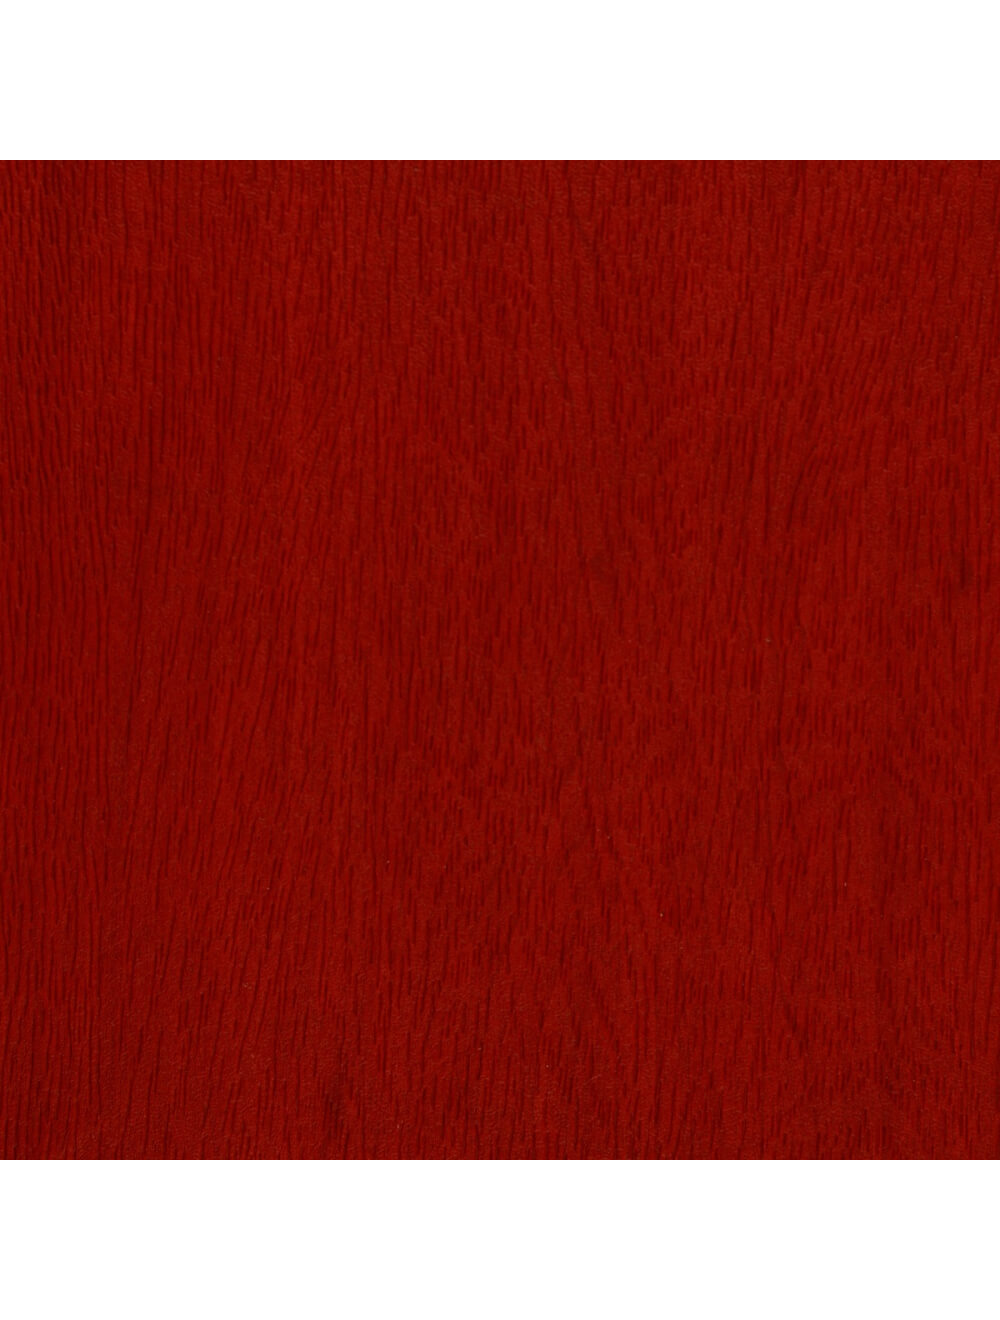 Swatch de material de grano de madera roja de Washington (E948)